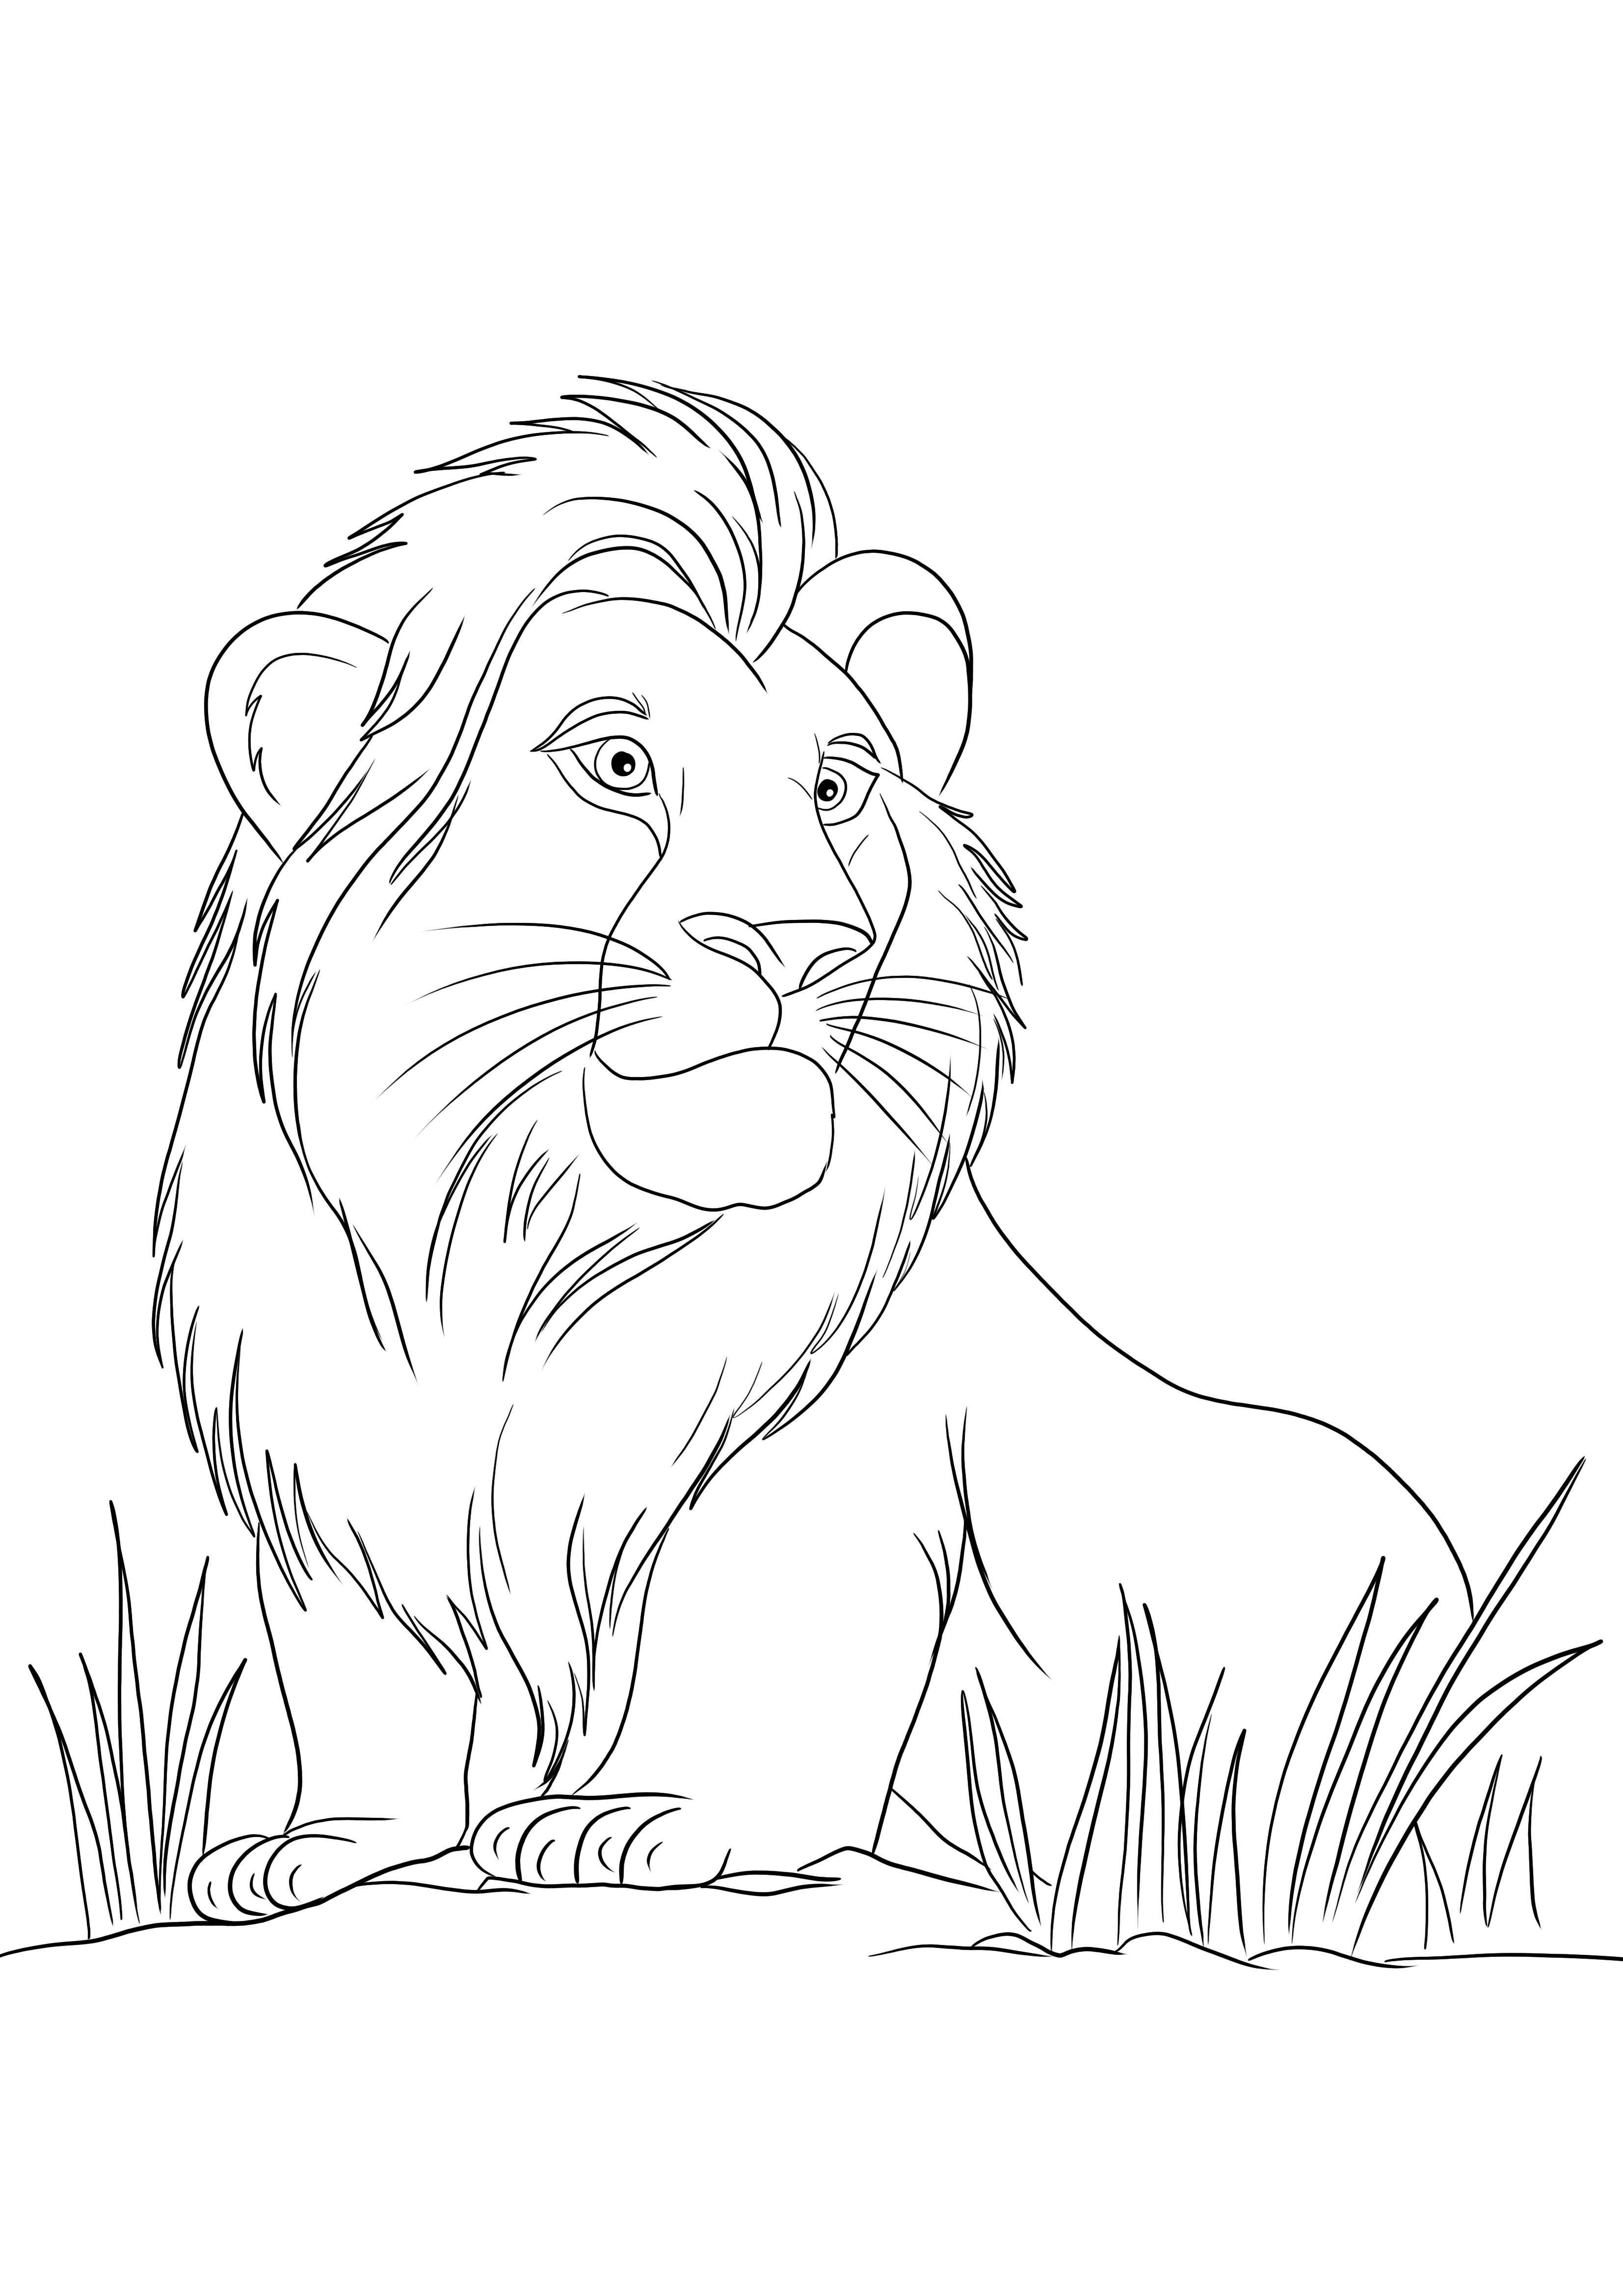 Simba dari film Disney Lion's King dapat dicetak gratis untuk diwarnai